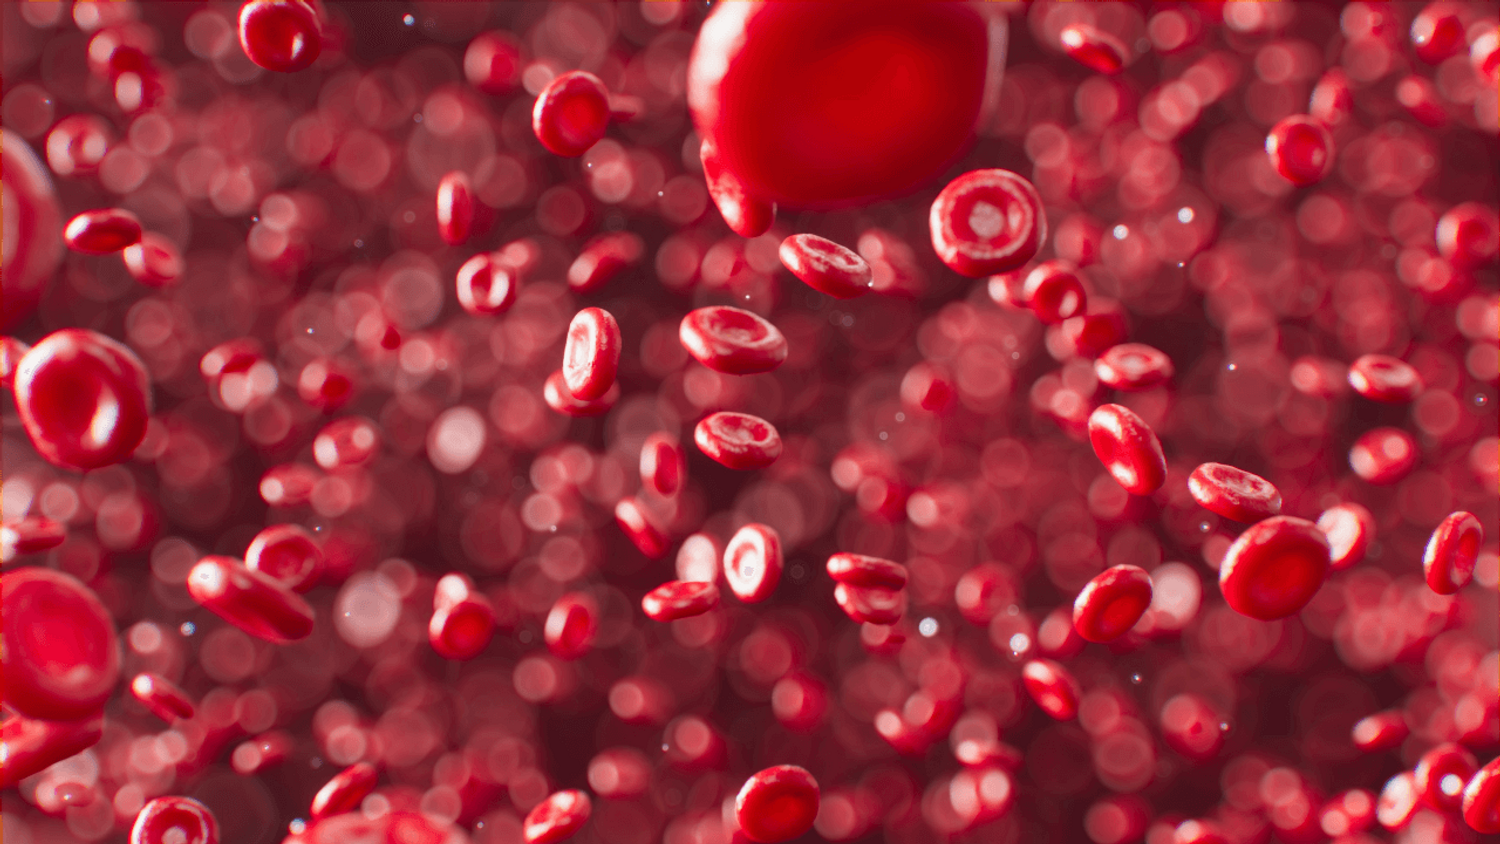 Des microplastiques détectés dans du sang humain, une première, selon une étude